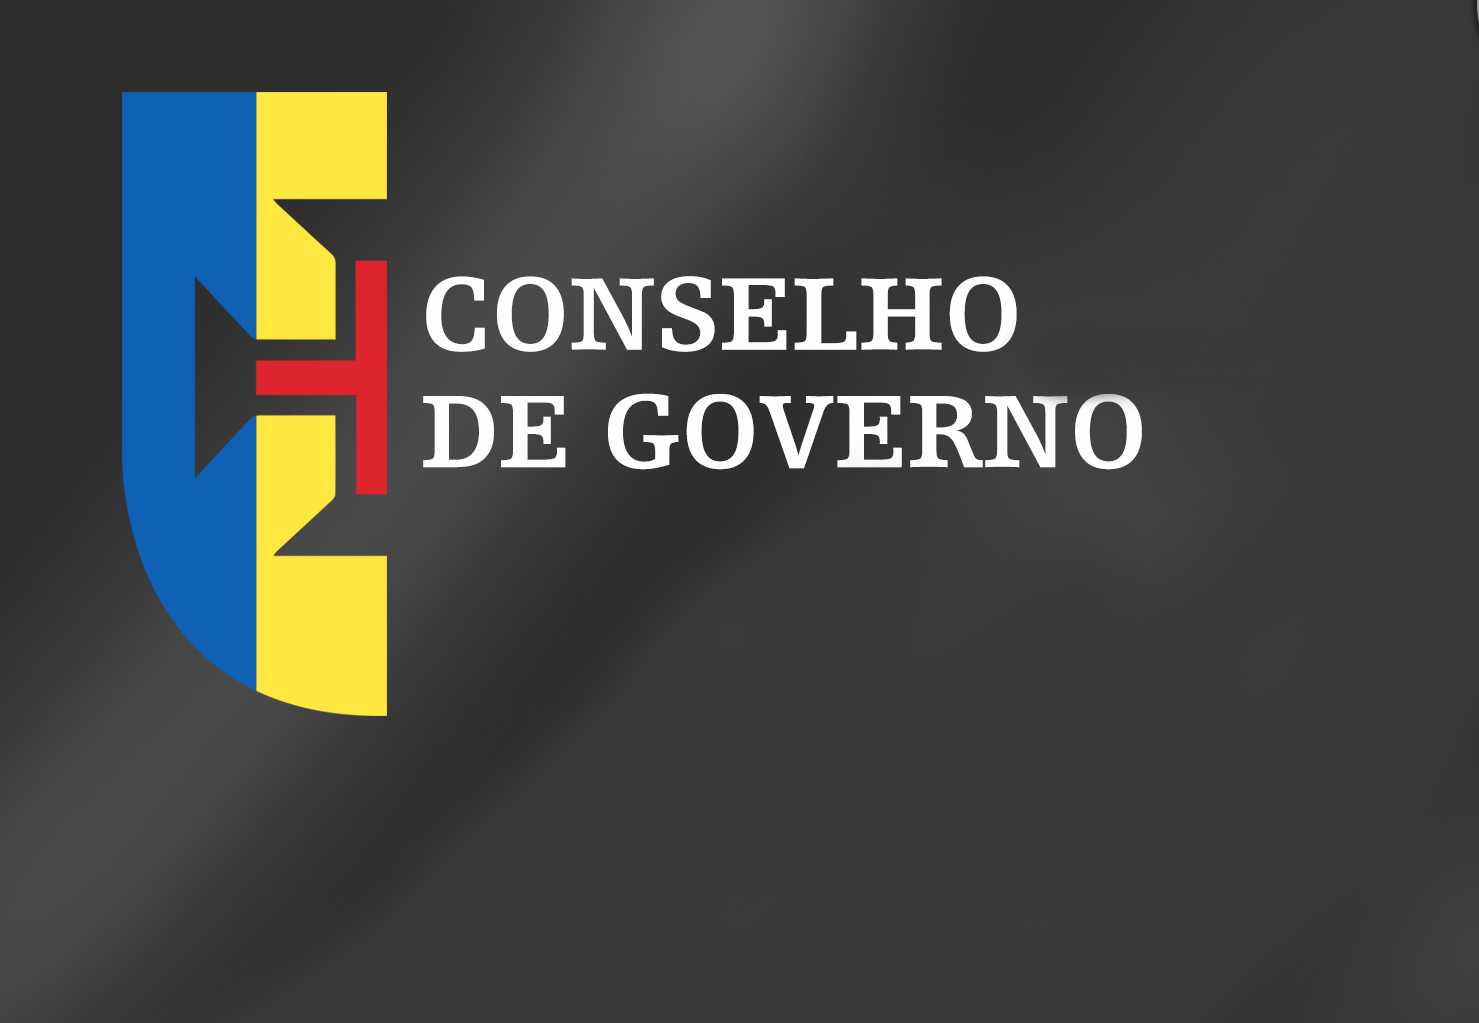 Conclusões Conselho de Governo - 08 de julho de 2021